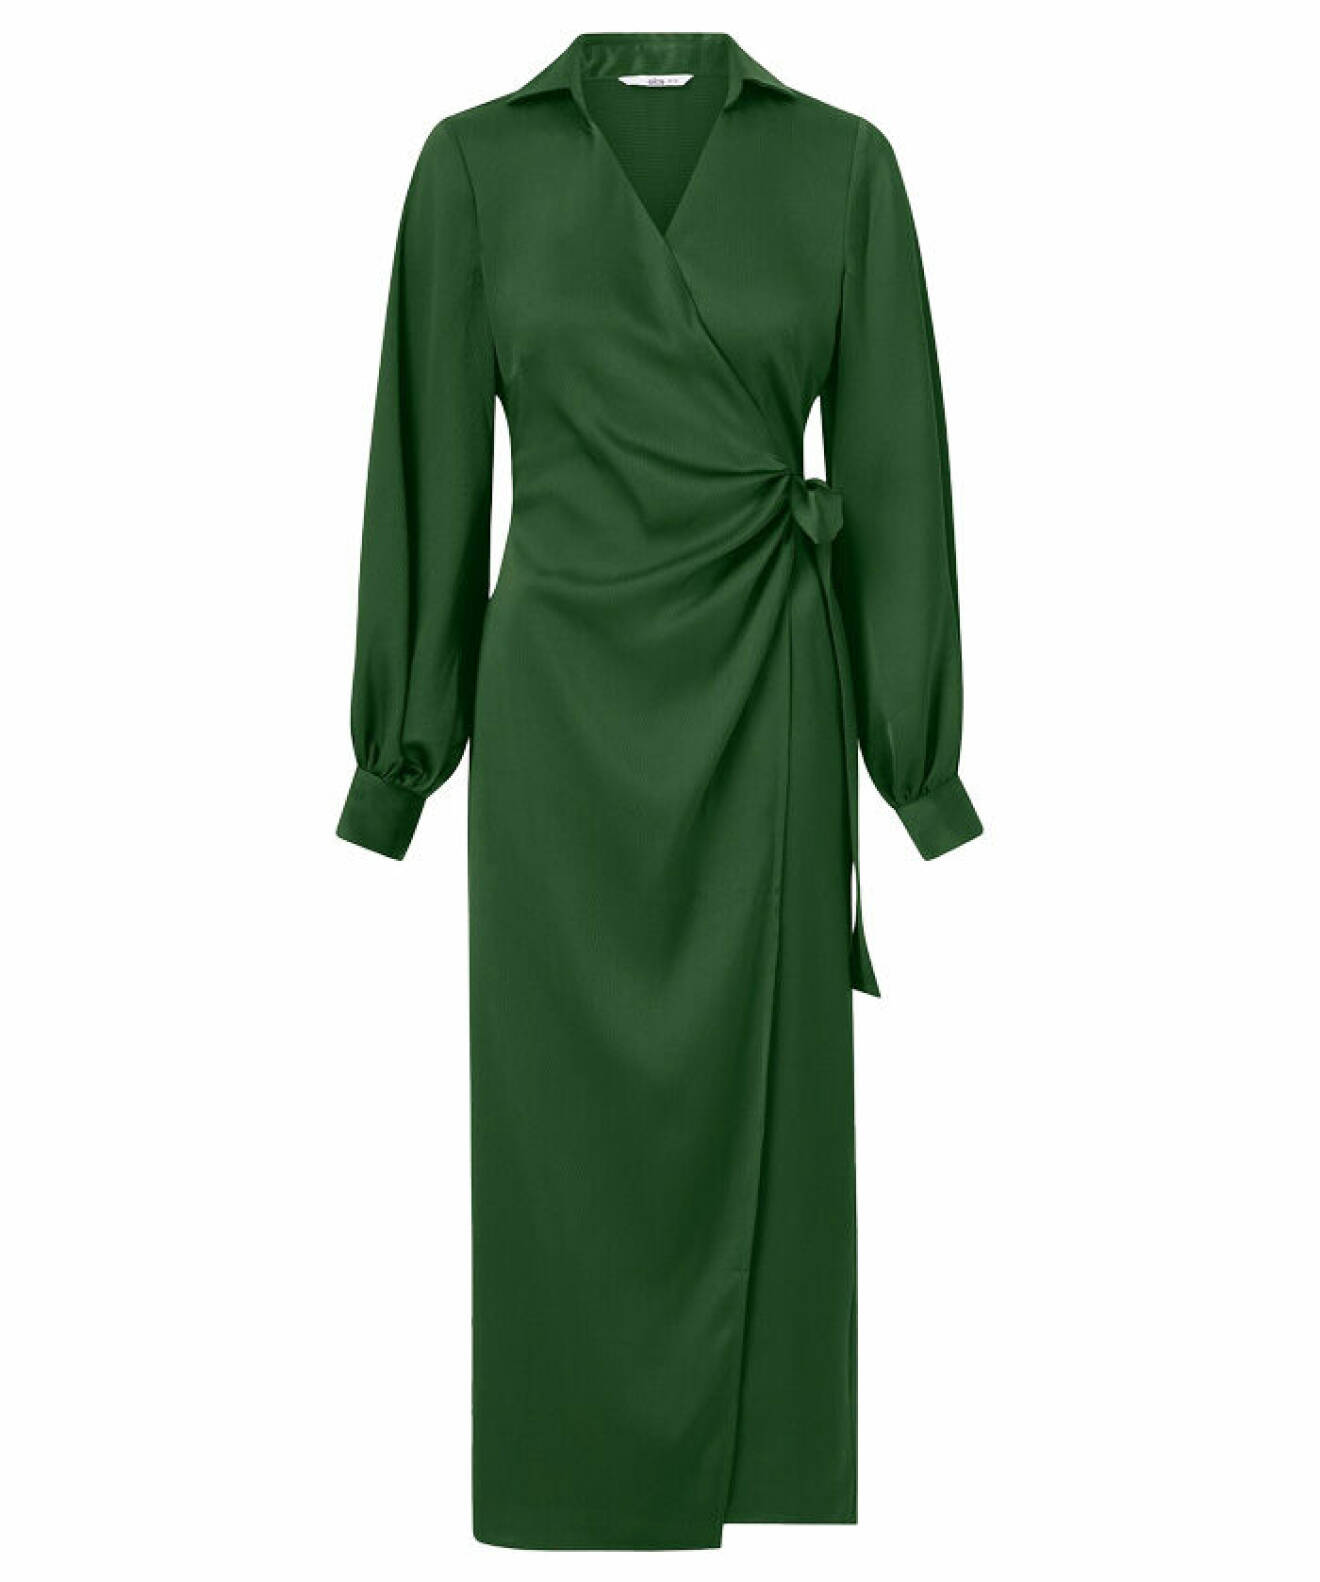 grön klänning från Ellos Collection